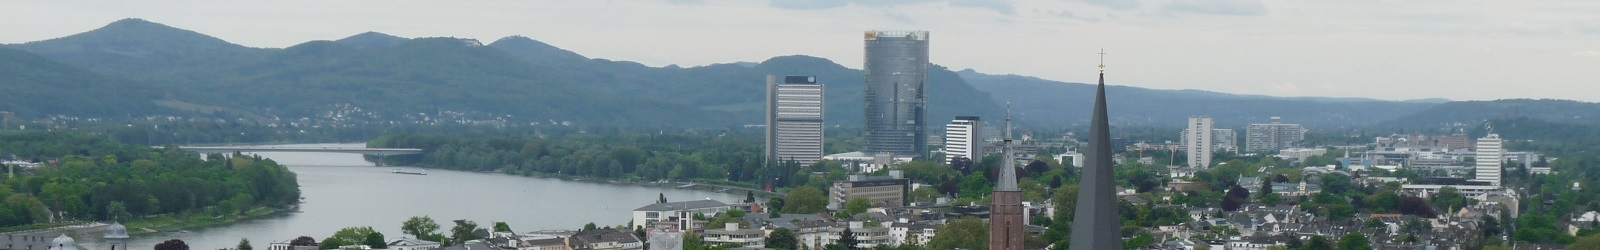 OAG Bonn